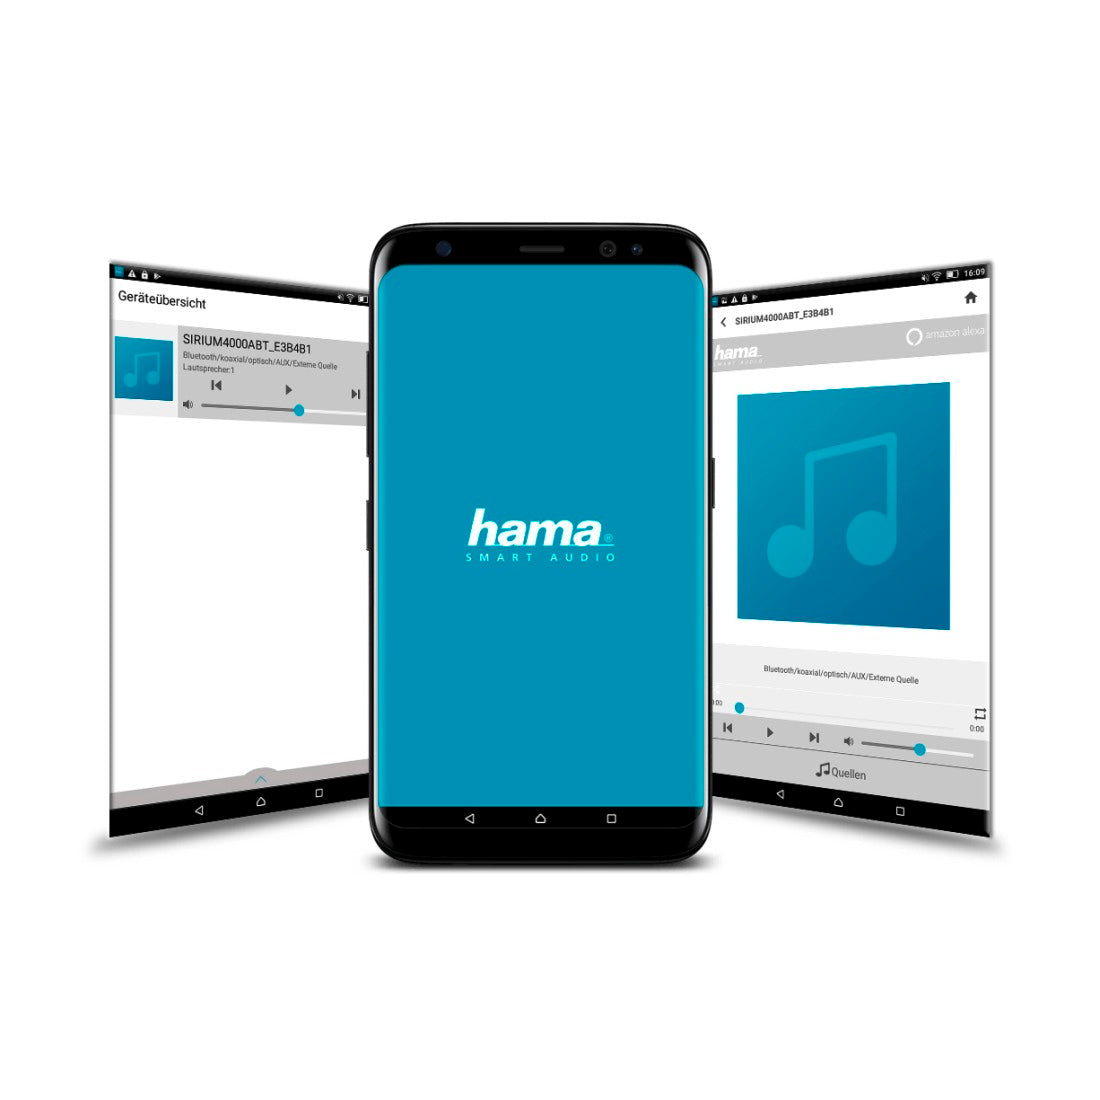 HAMA SMART-SPEAKER "Sirium1400Abt", Alexa / Bluetooth®